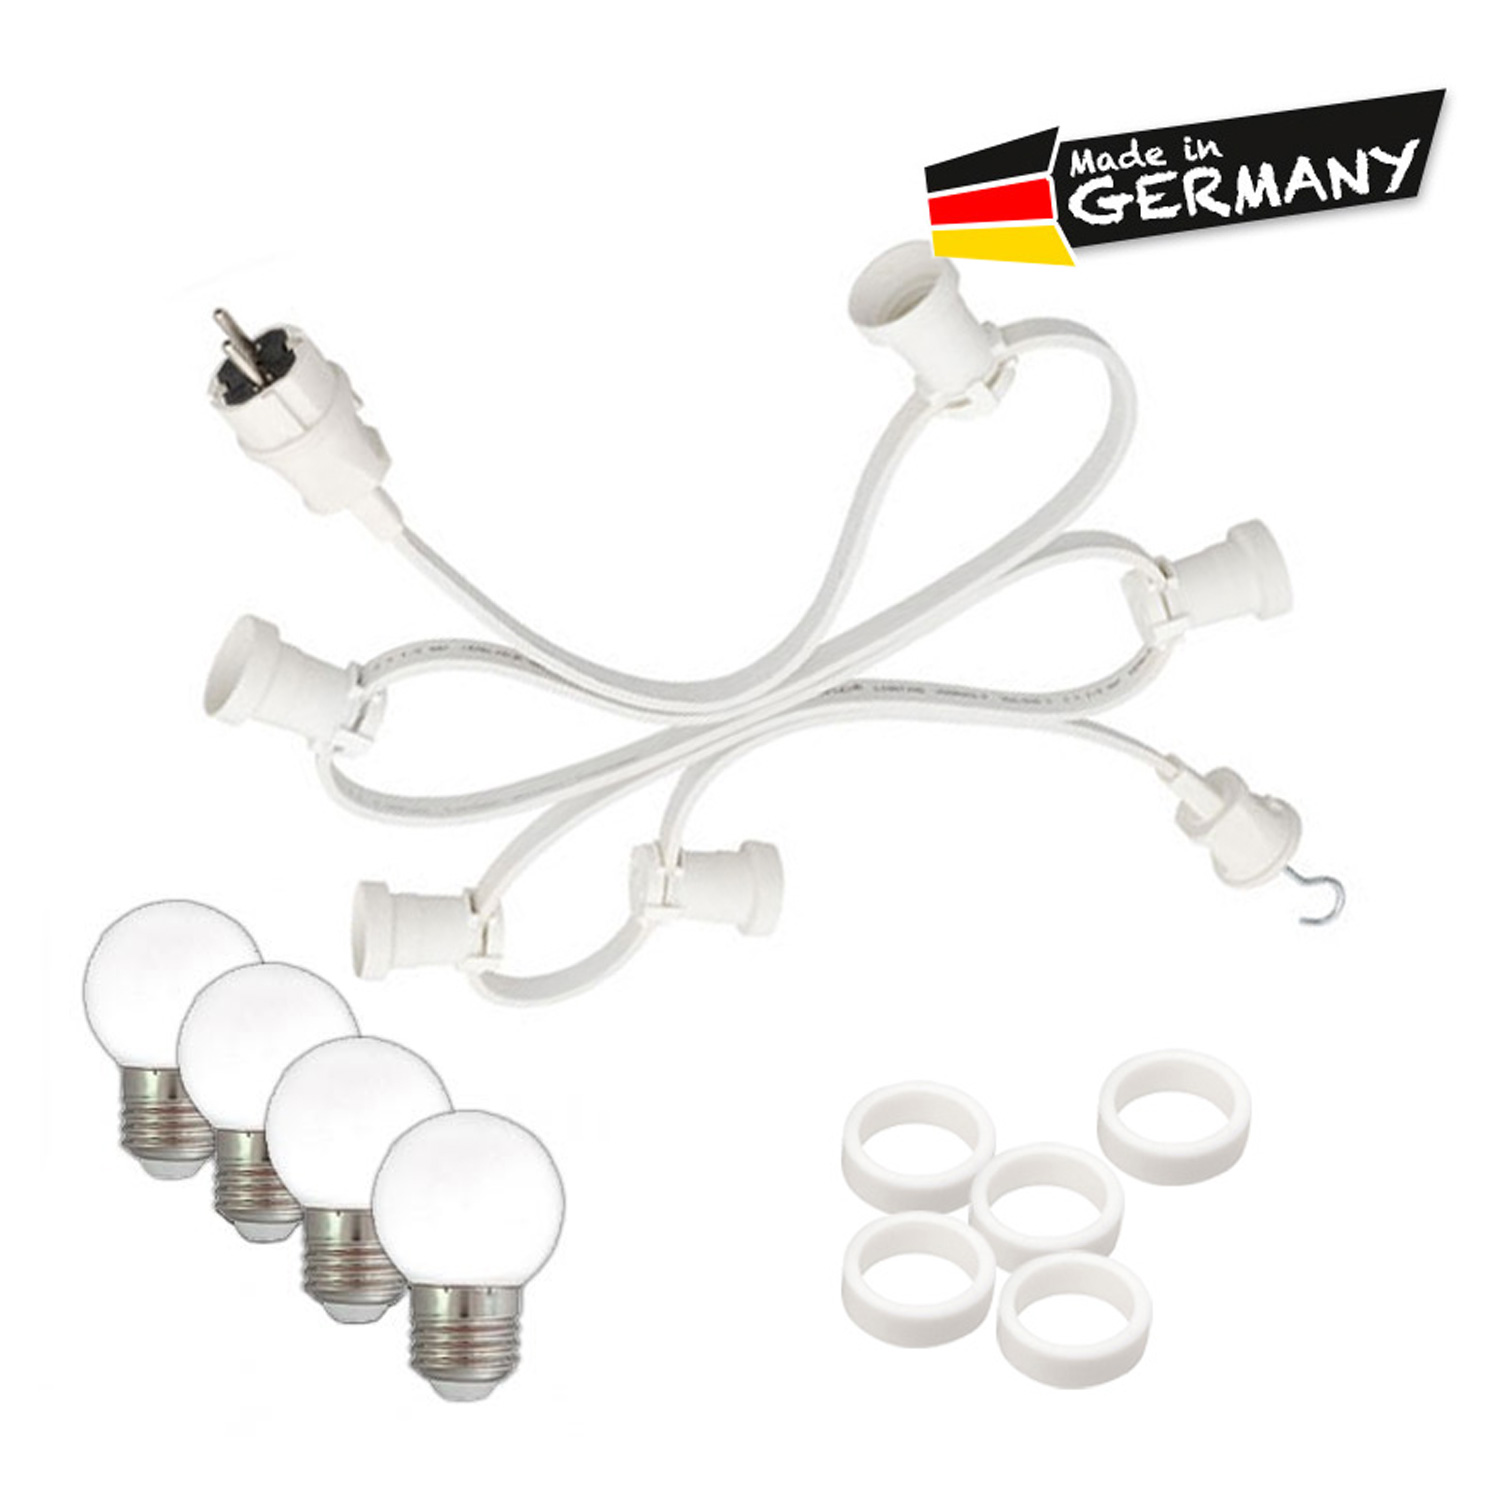 Illu-/Partylichterkette 20m - Außenlichterkette - Made in Germany - 20 x warmweiße LED Kugellampen